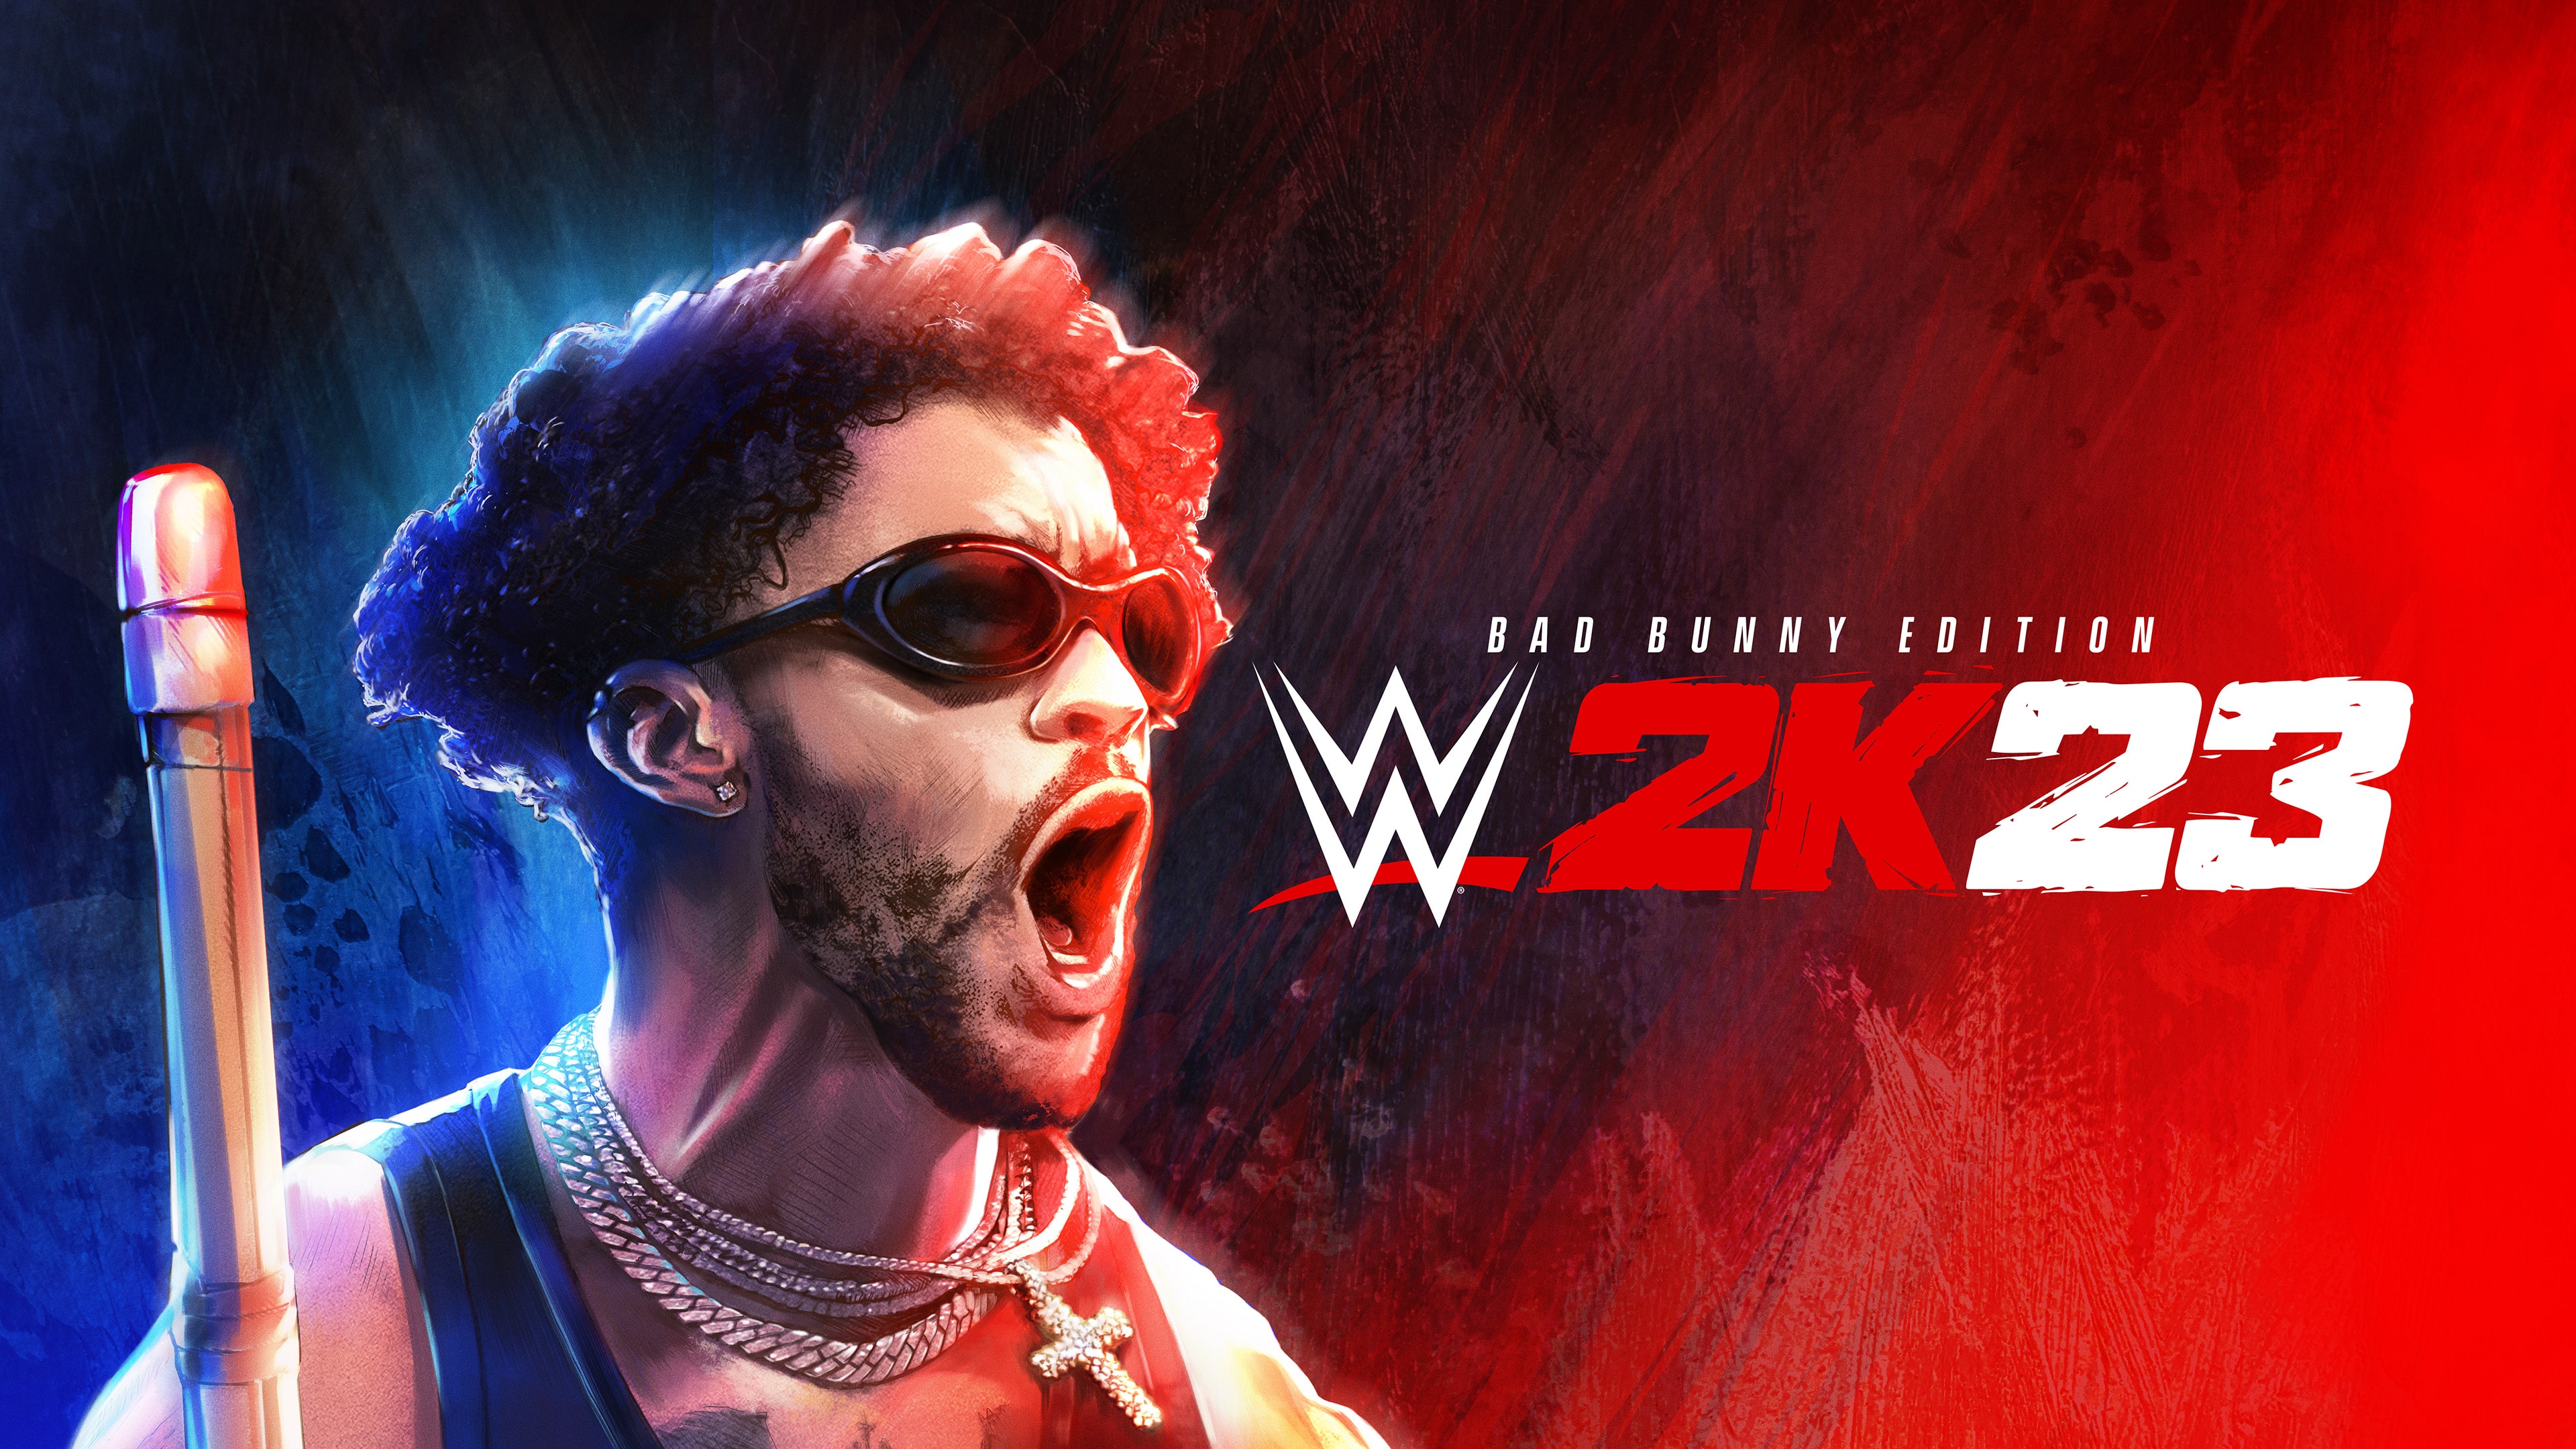 WWE 2K23 Bad Bunny Edition (English)